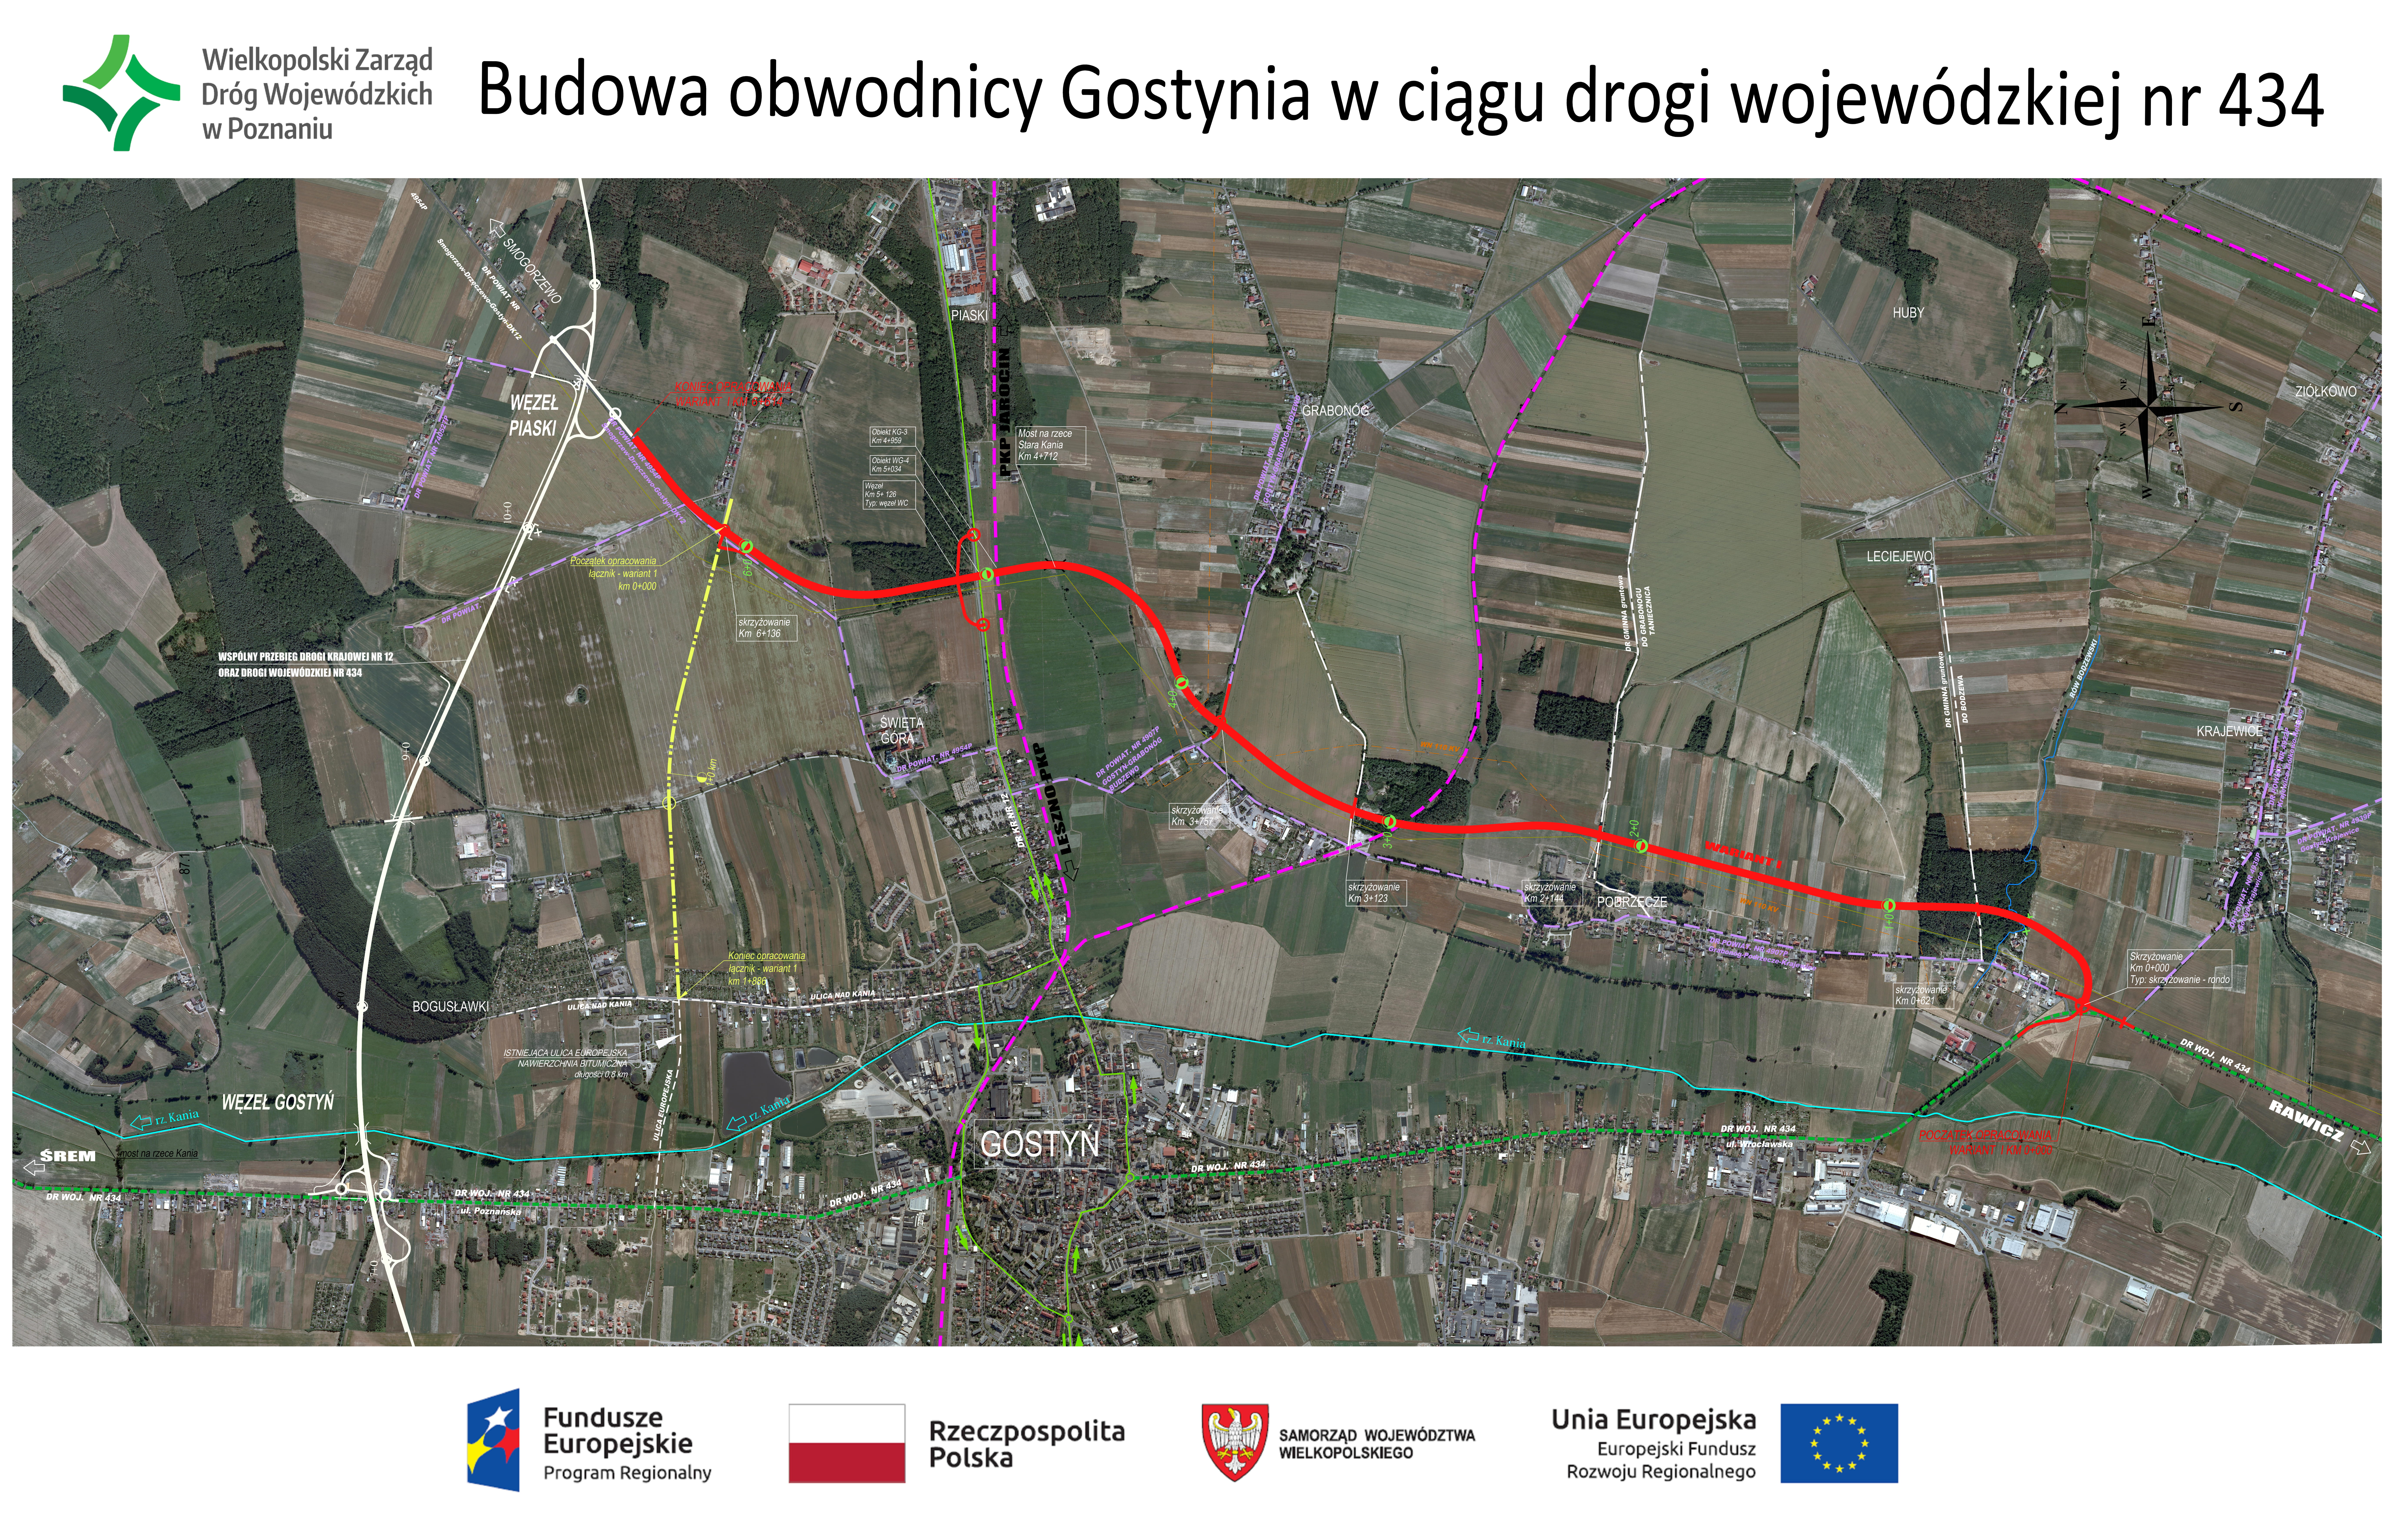 Umowa na budowę obwodnicy Gostynia w ciągu drogi wojewódzkiej nr 434 podpisana - zobacz więcej